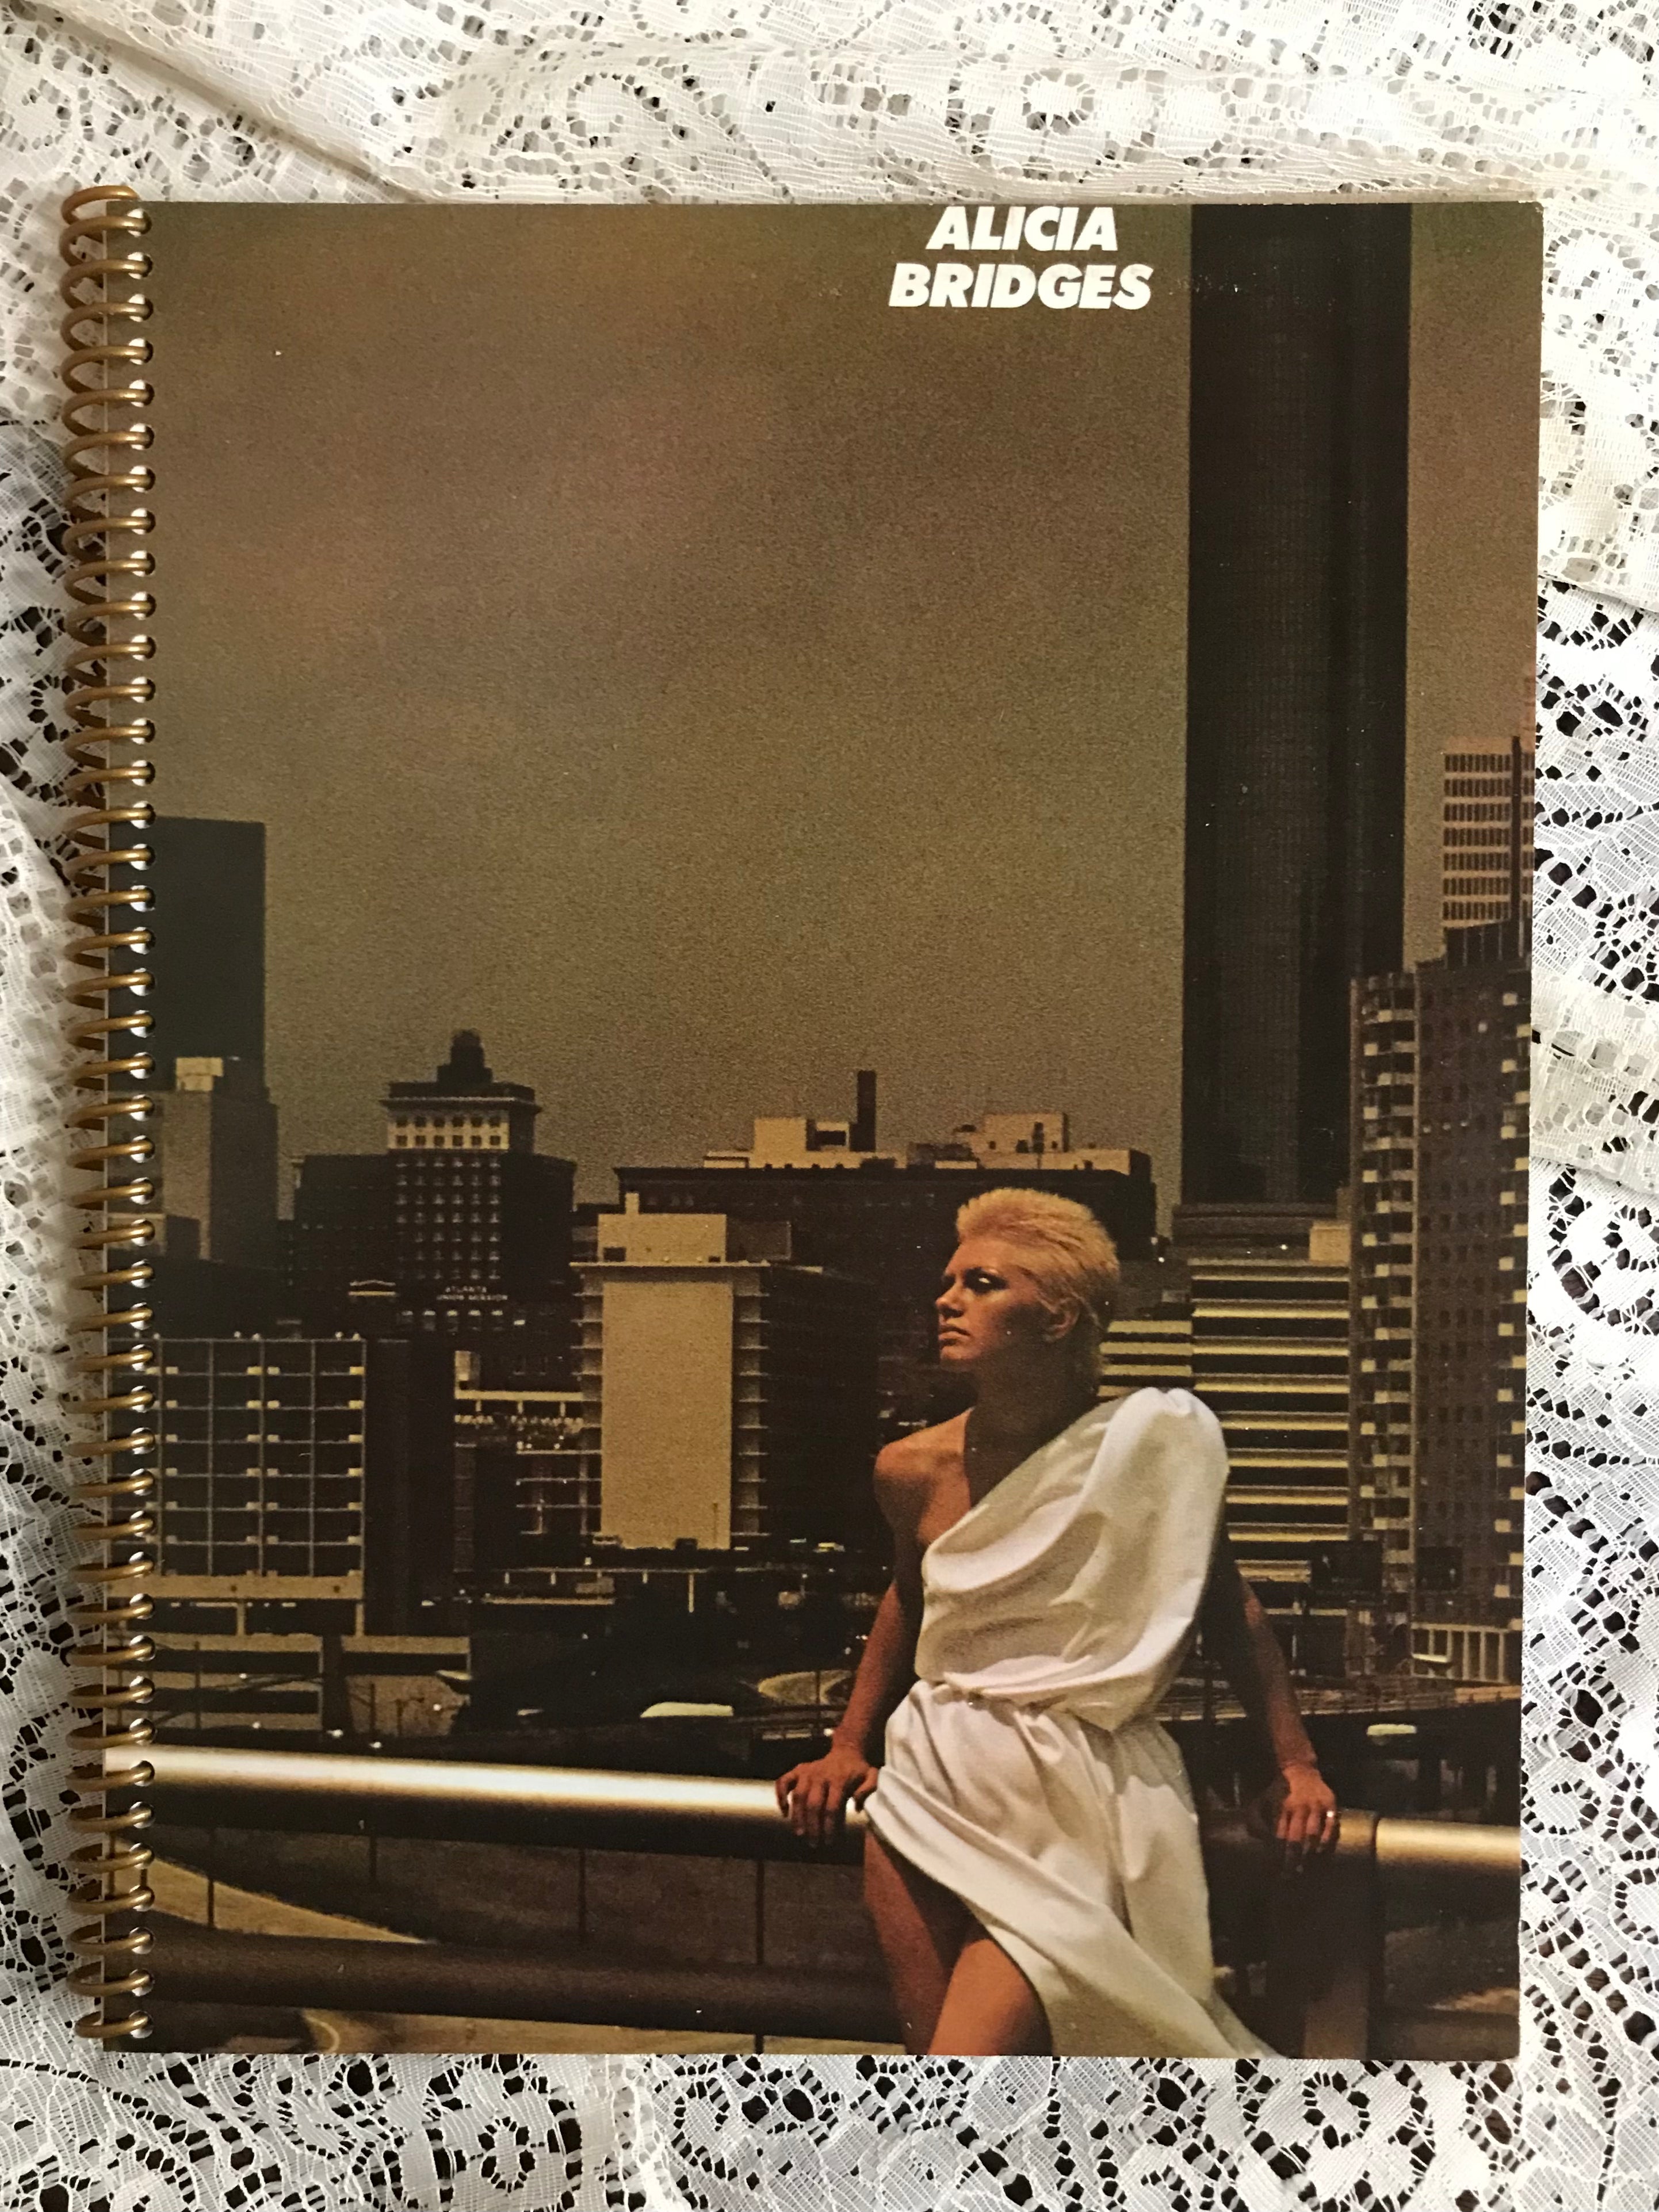 Alicia Bridges Album Cover Notebook